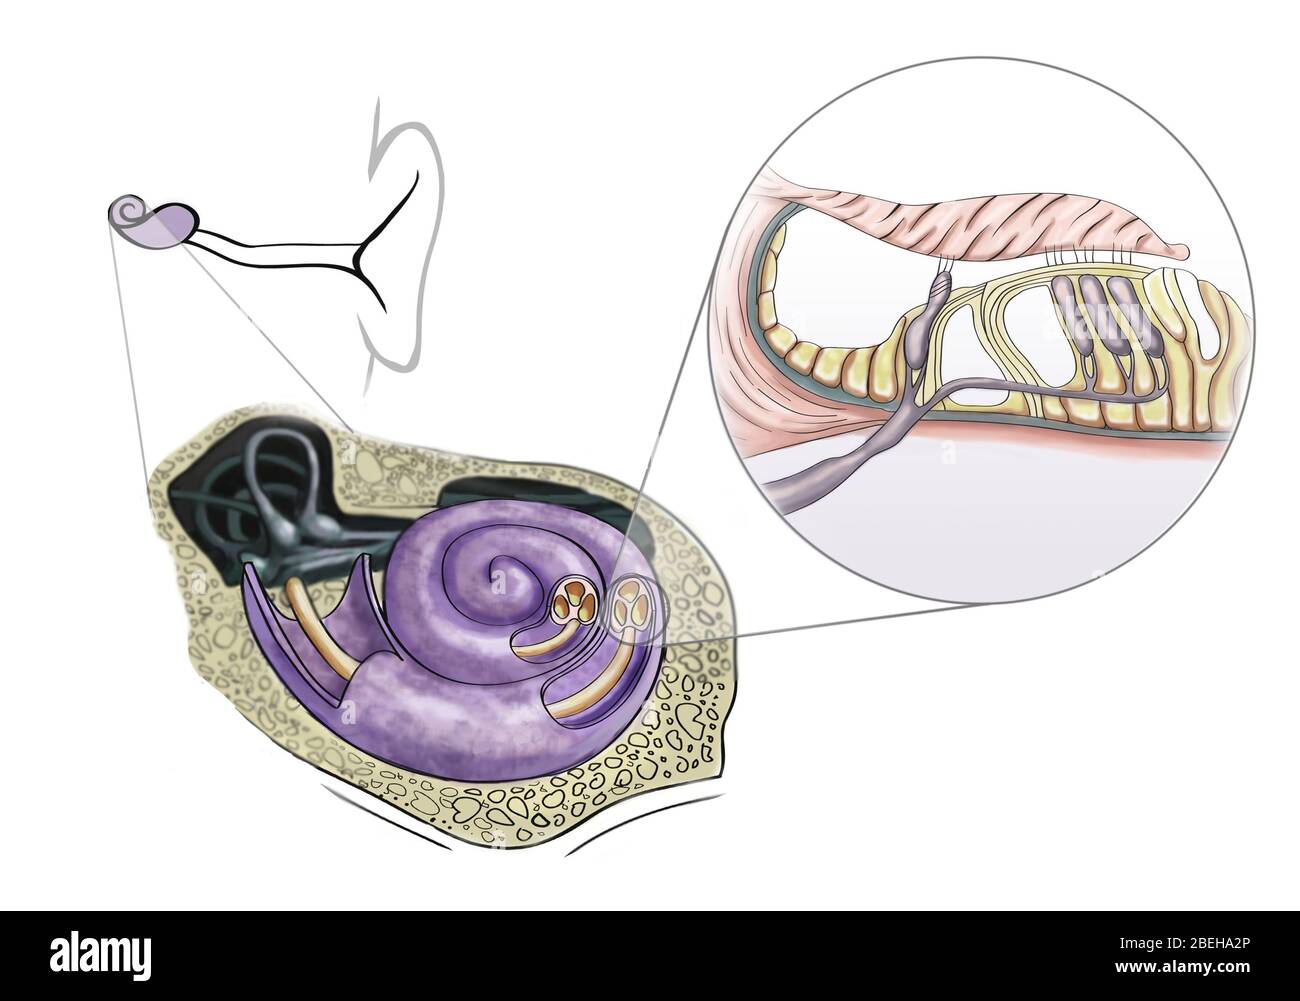 Un'illustrazione delle cellule dei capelli uditive che si trovano nell'organo a spirale di Corti sulla sottile membrana basilare nella coclea dell'orecchio interno. Foto Stock